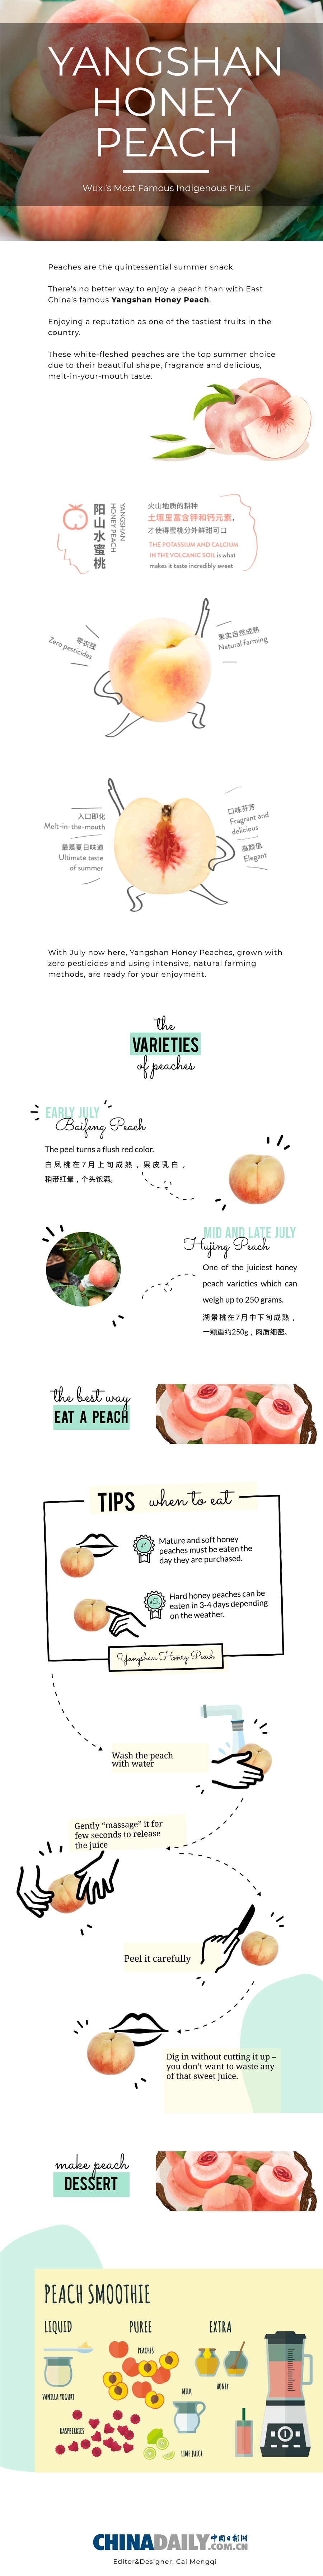 Wuxi's most famous indigenous fruit: Yangshan Honey Peach